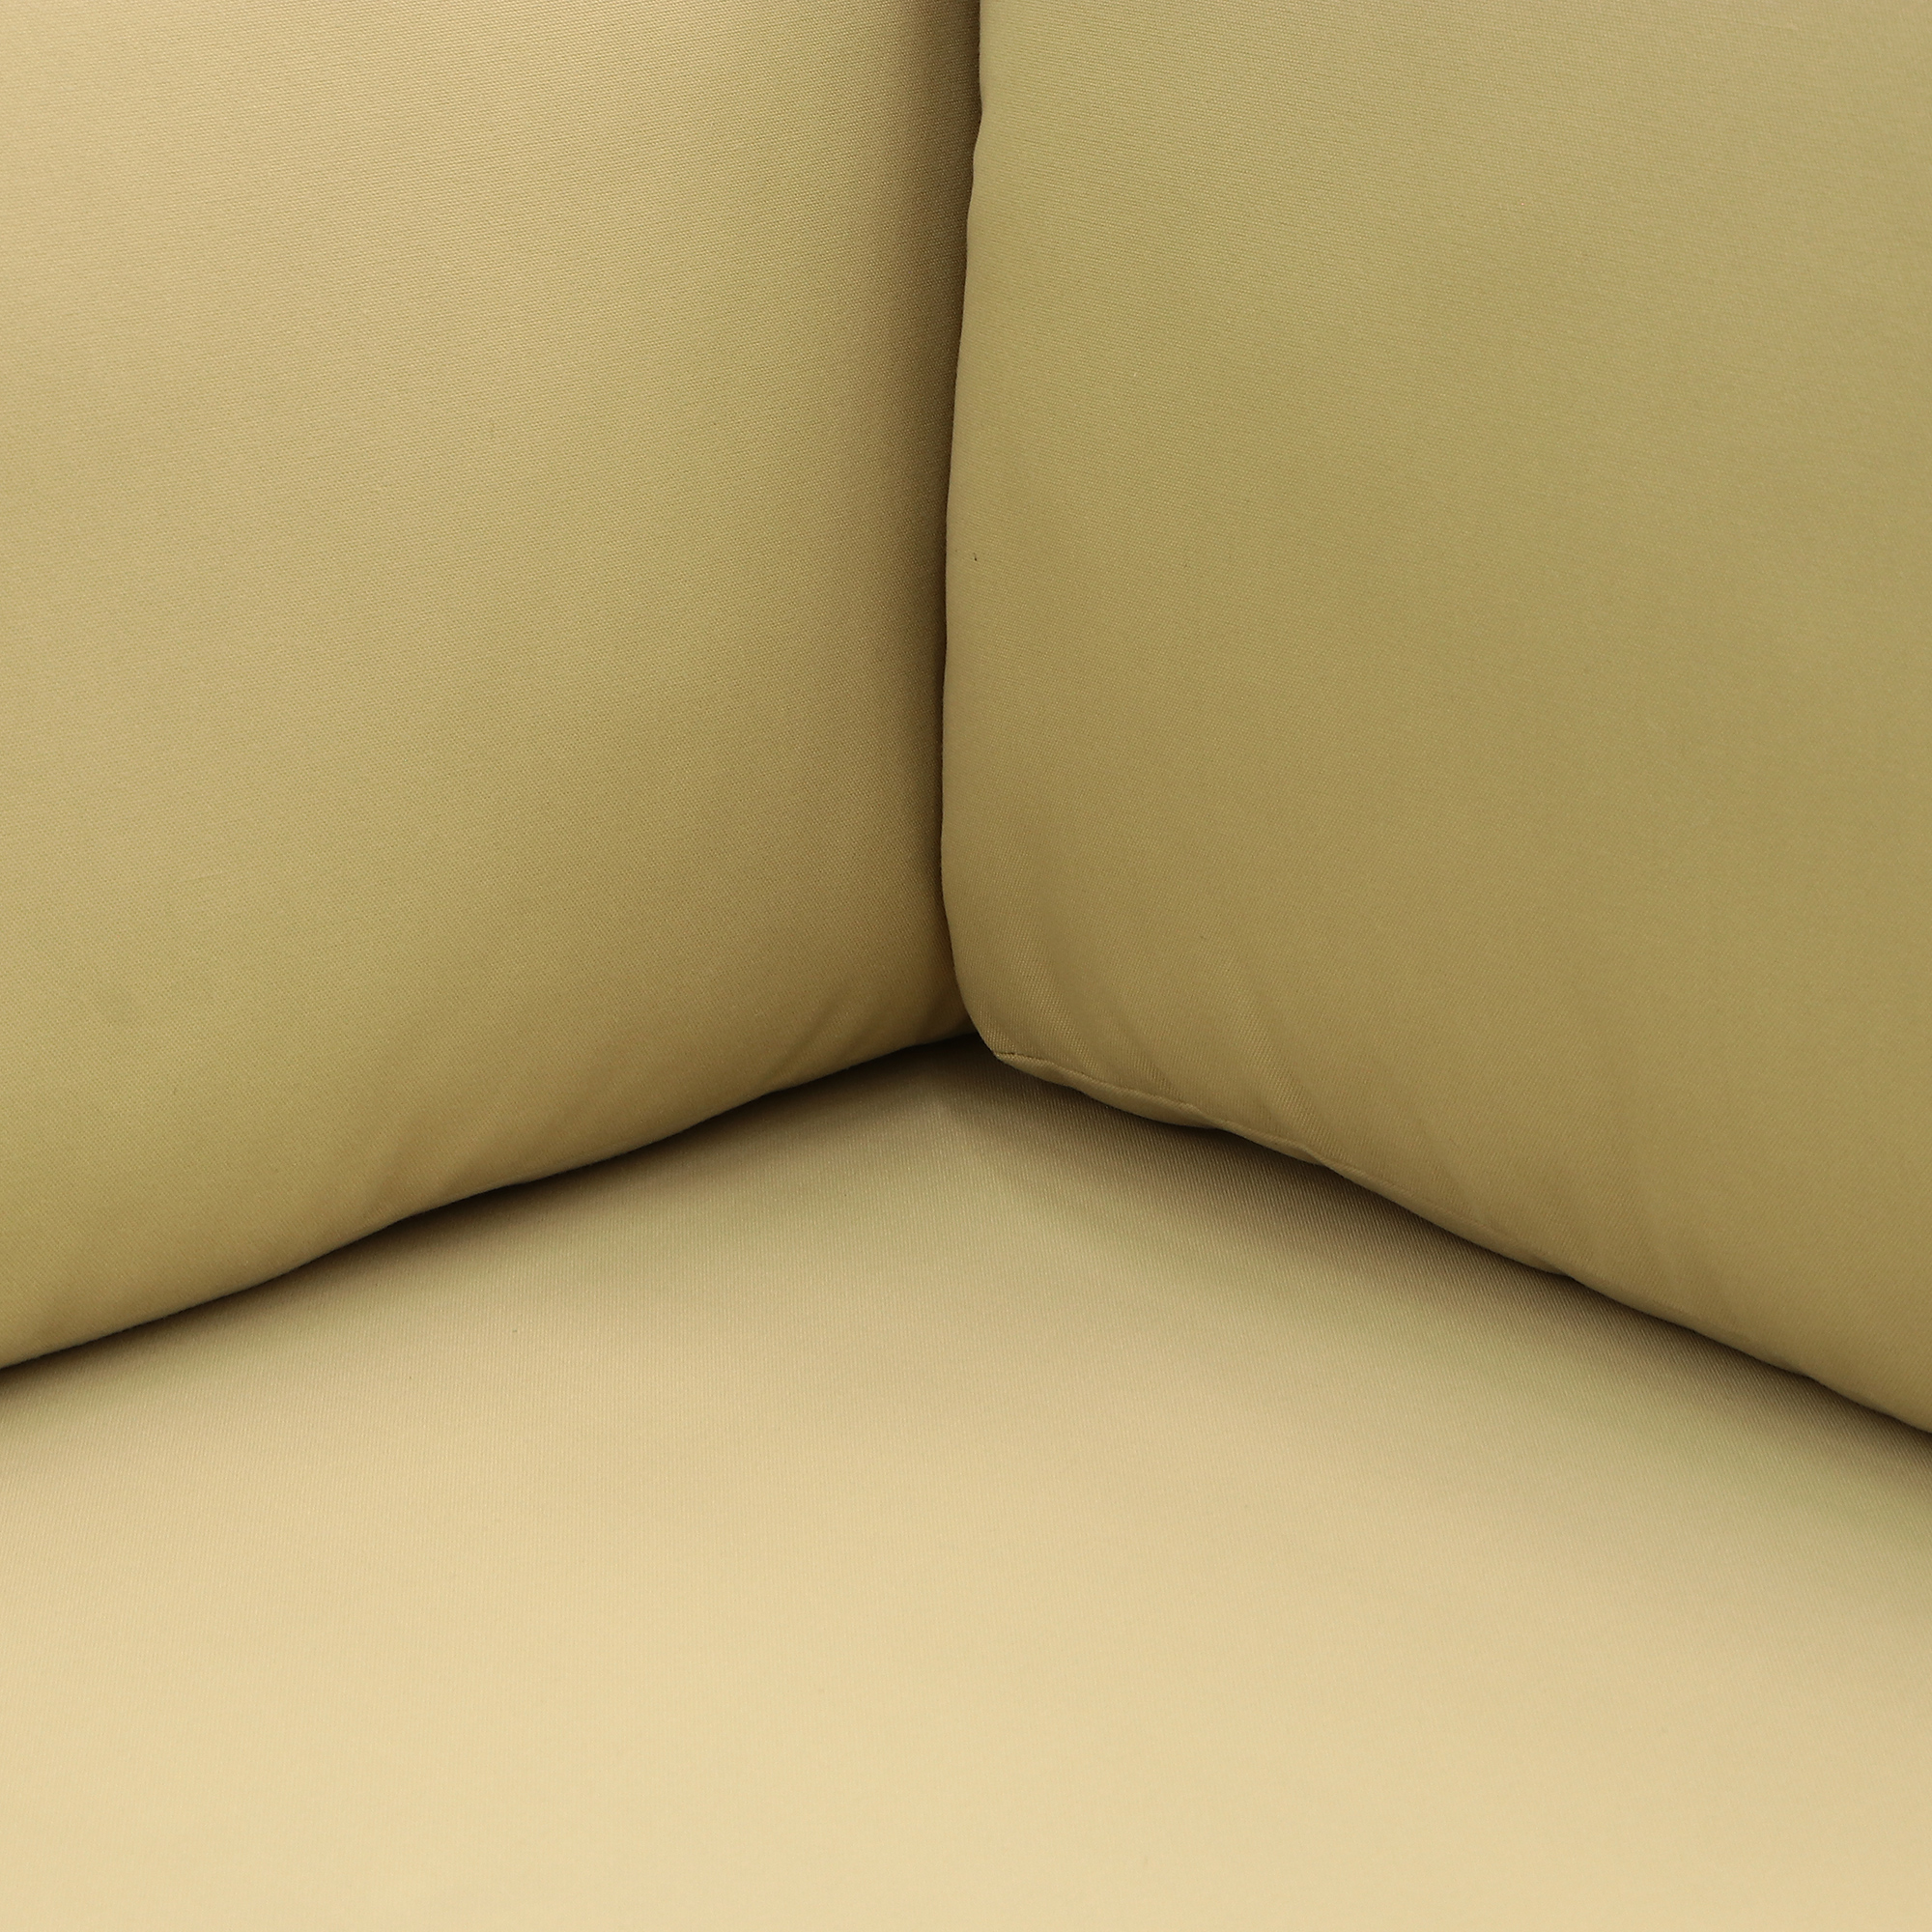 Комплект мебели угловой Ronica tusson 5 предметов, цвет коричневый, размер 60х60 - фото 18